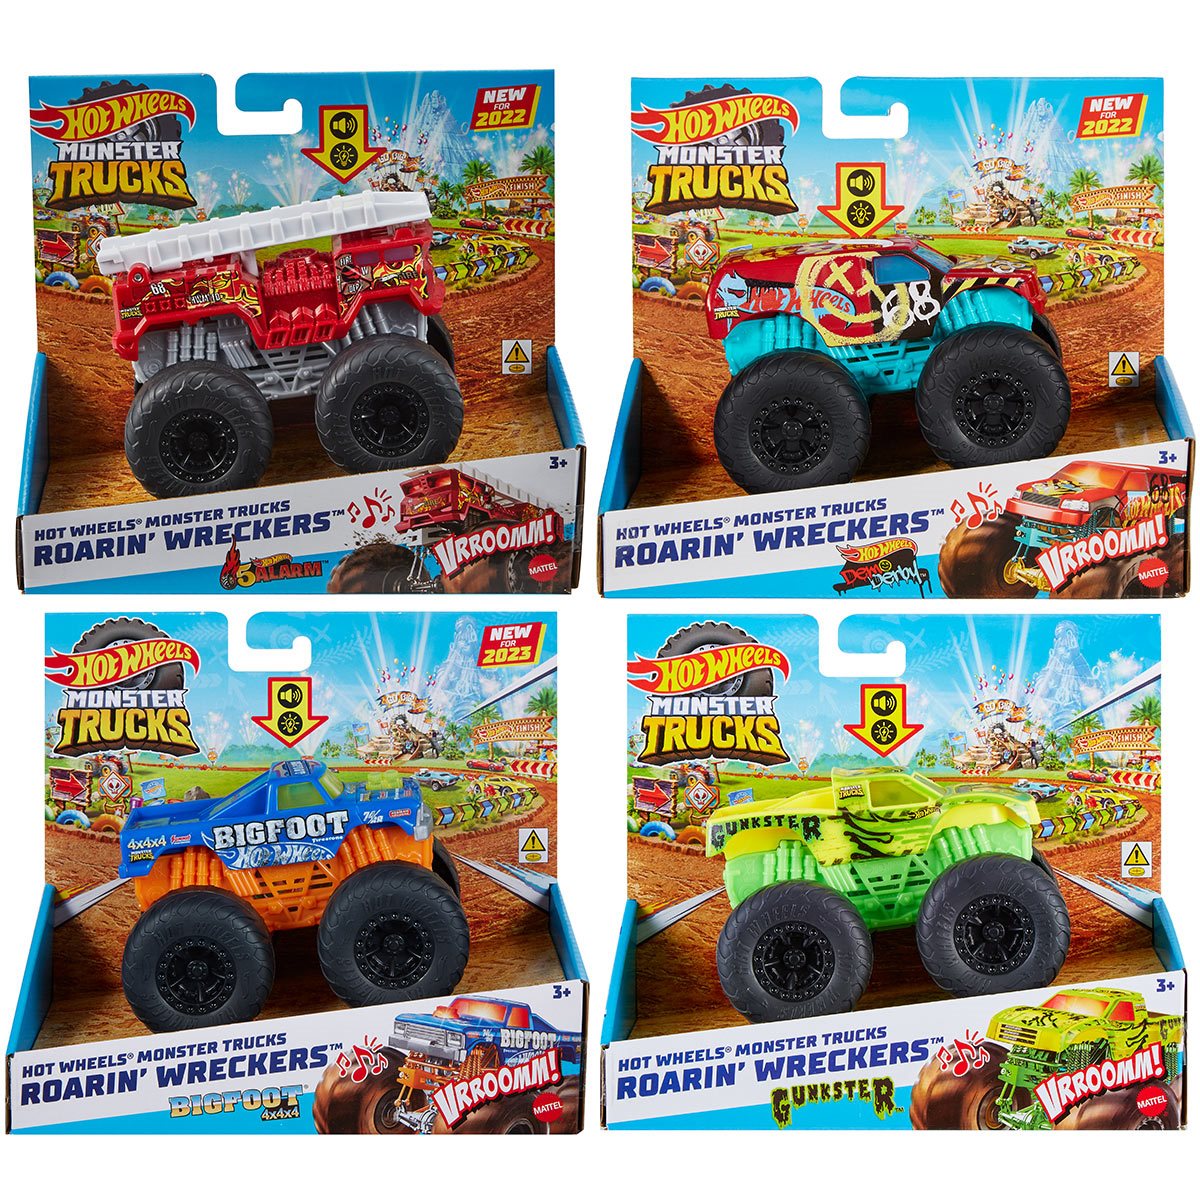 Hot Wheels Monster Trucks Roarin’ Wreckers, 1 1:43 Scale Truck